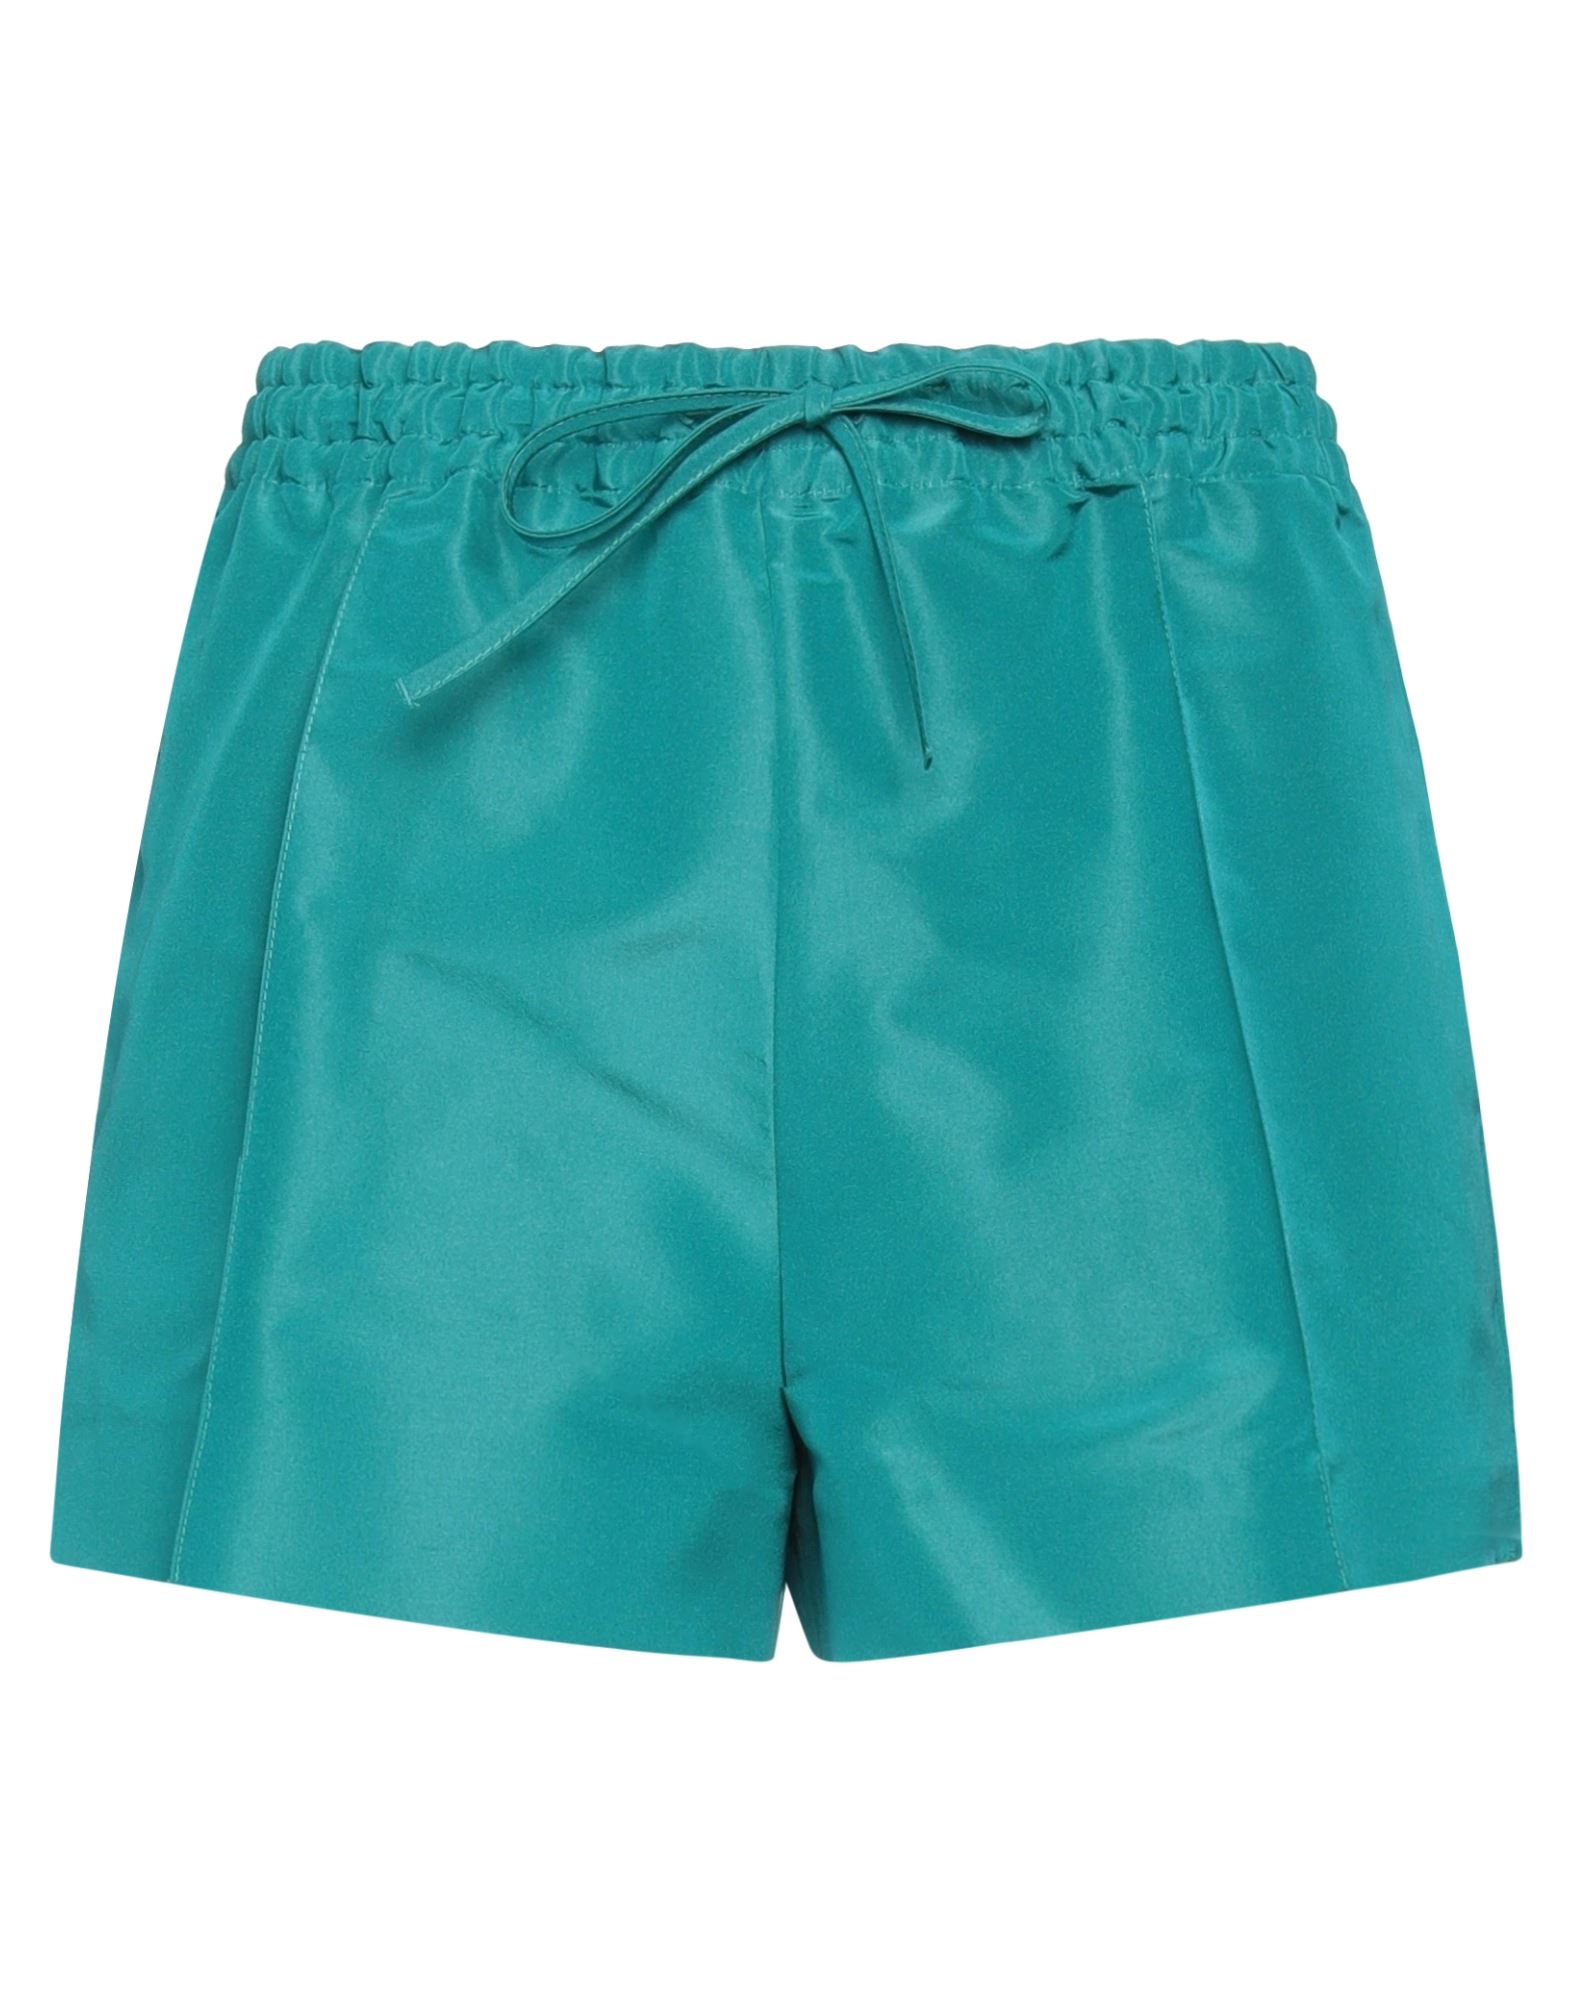 Valentino Garavani Woman Shorts & Bermuda Shorts Emerald Green Size 6 Silk